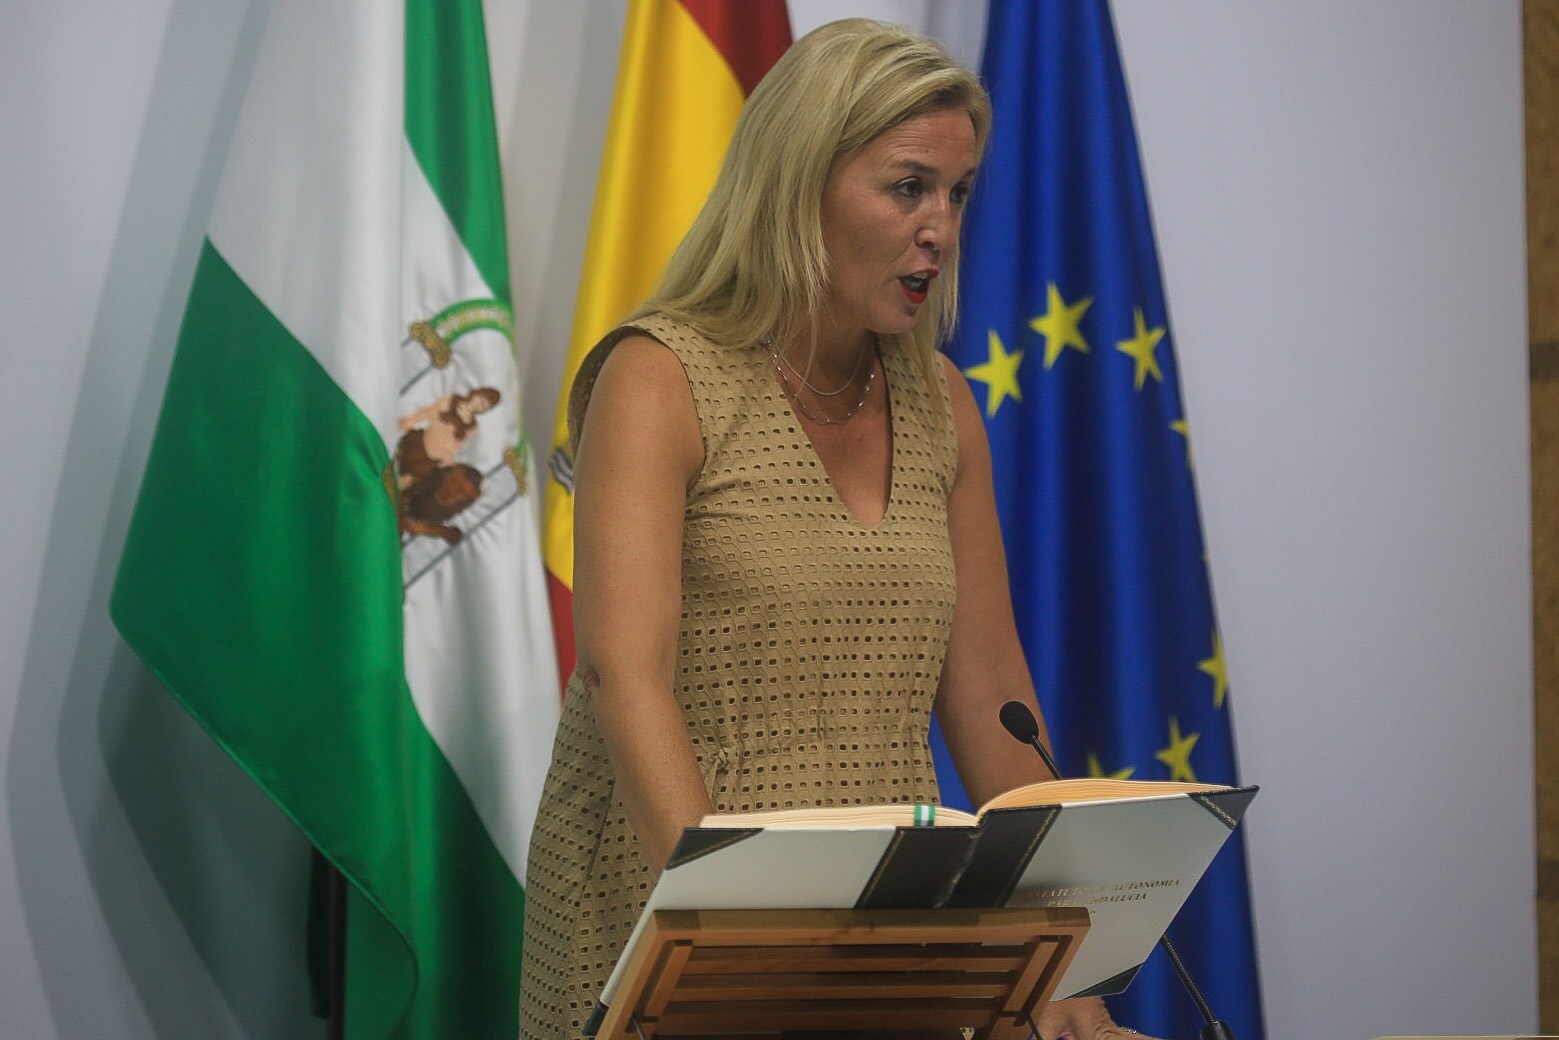 Eva Pajares Ruiz, Delegada territorial de Salud y Consumo